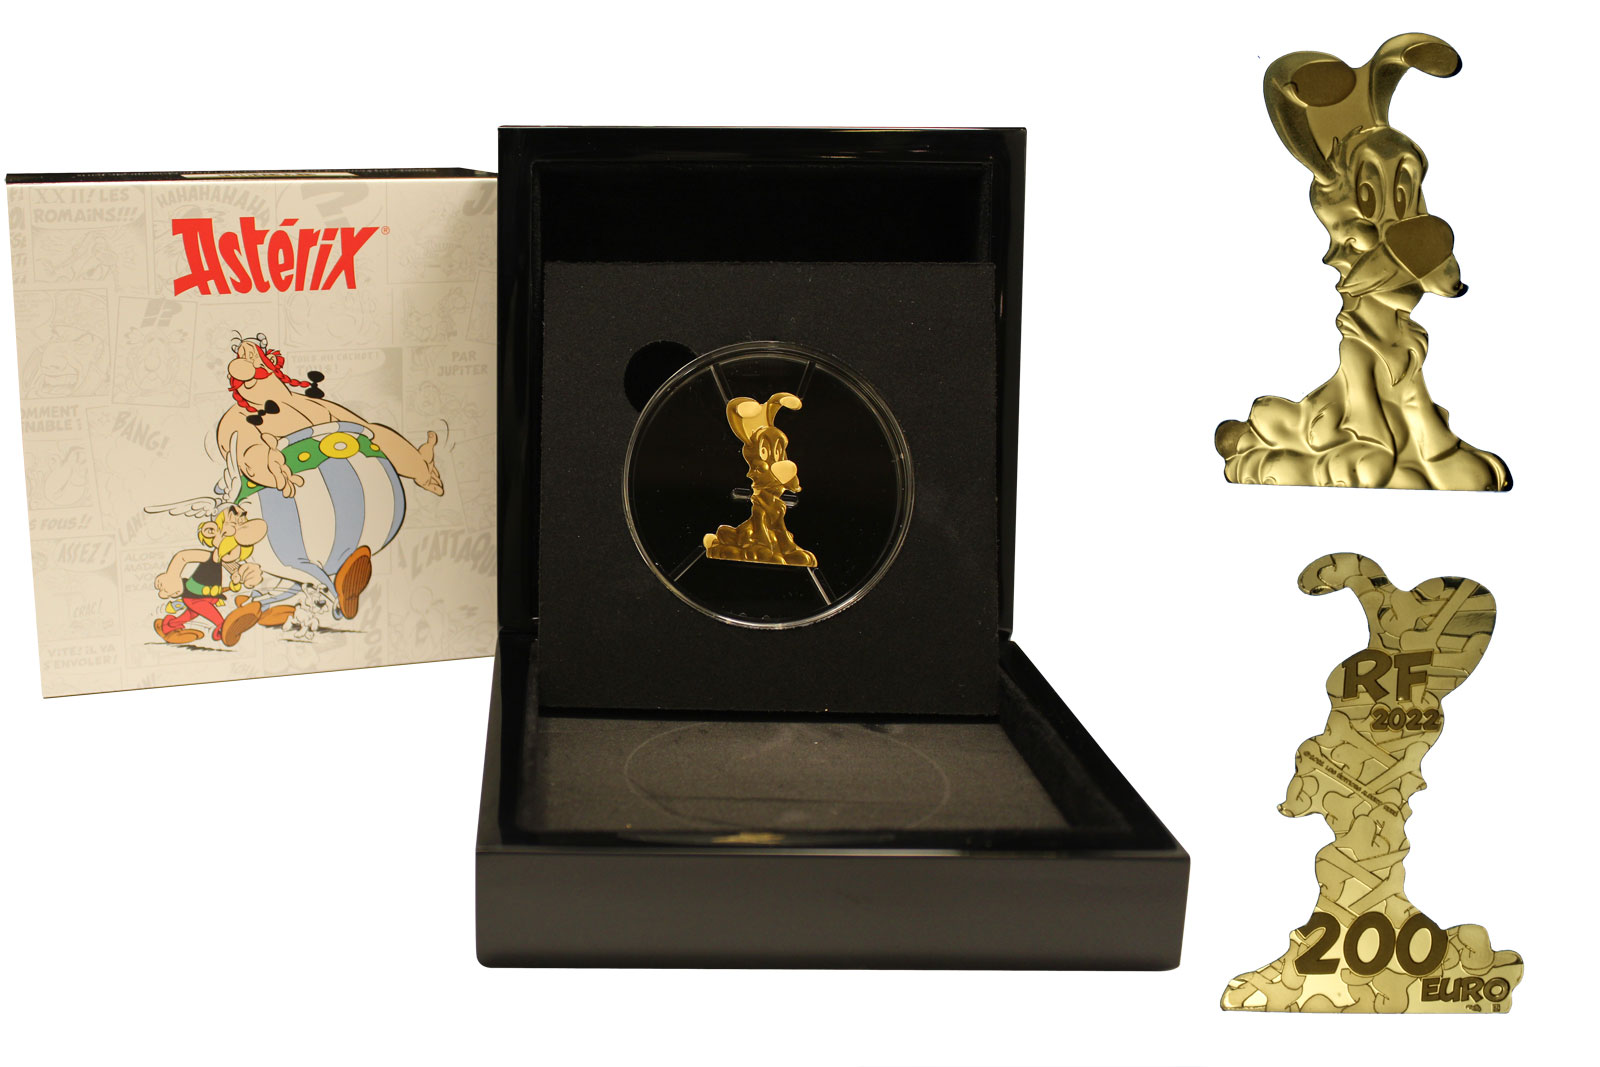 "Asterix - Idefix " - 200 euro gr. 31,10 in oro 999/000 - Tiratura 250 pezzi 